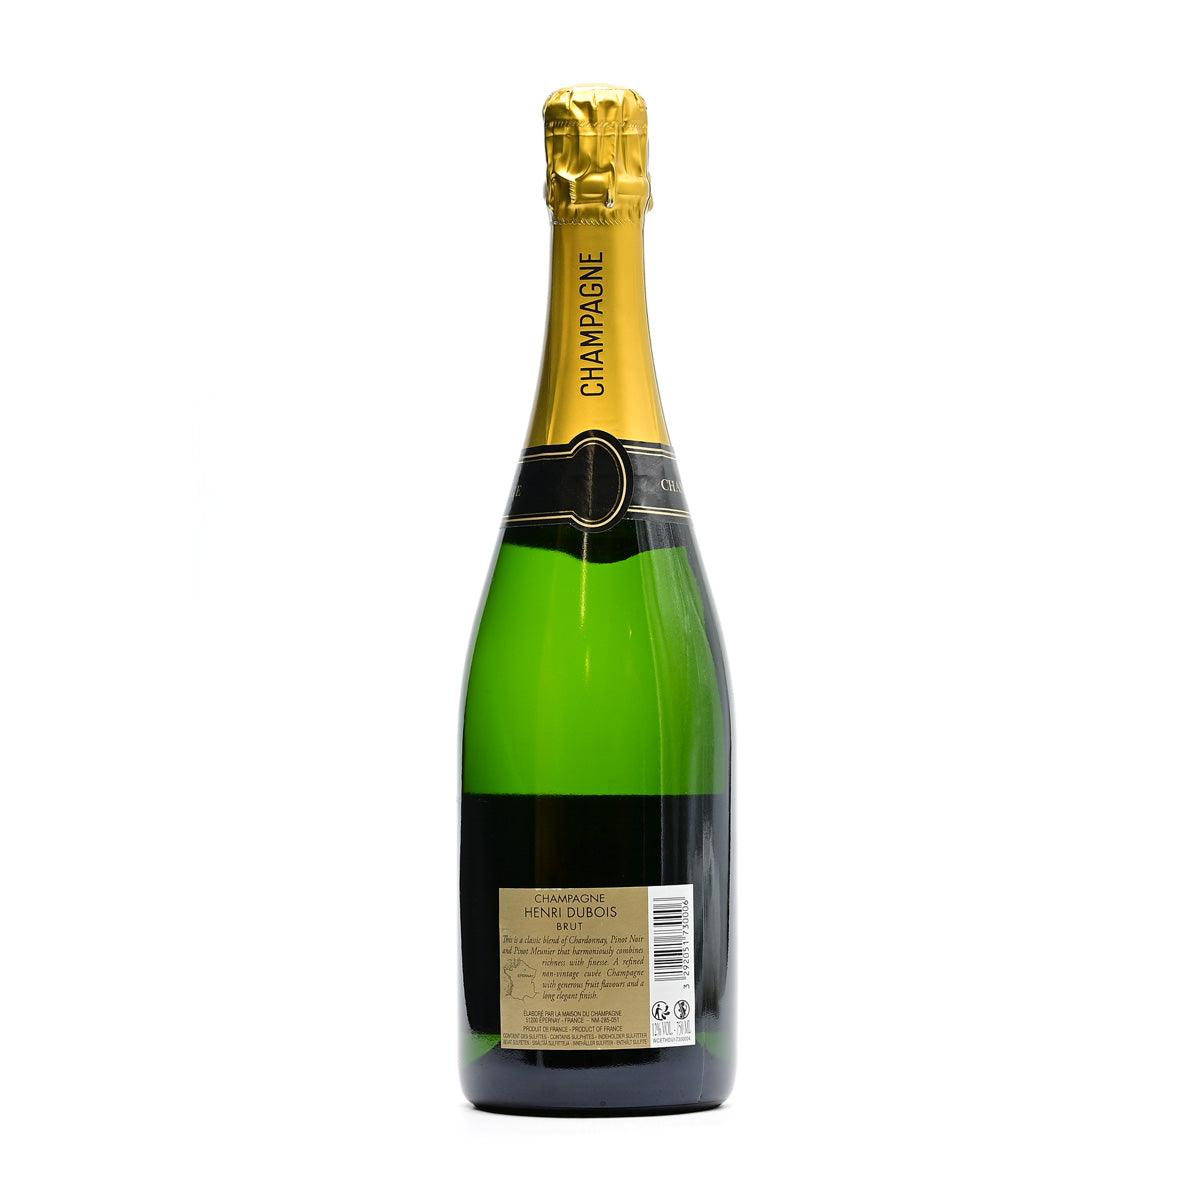 Champagne Henri Dubois Brut NV - Champagne - GDV Fine Wines® - 750ml, Champagne, Champagne Henri Dubois, France, Non-Vintage, Vallée de la Marne et Côte des Bars, Wine Product